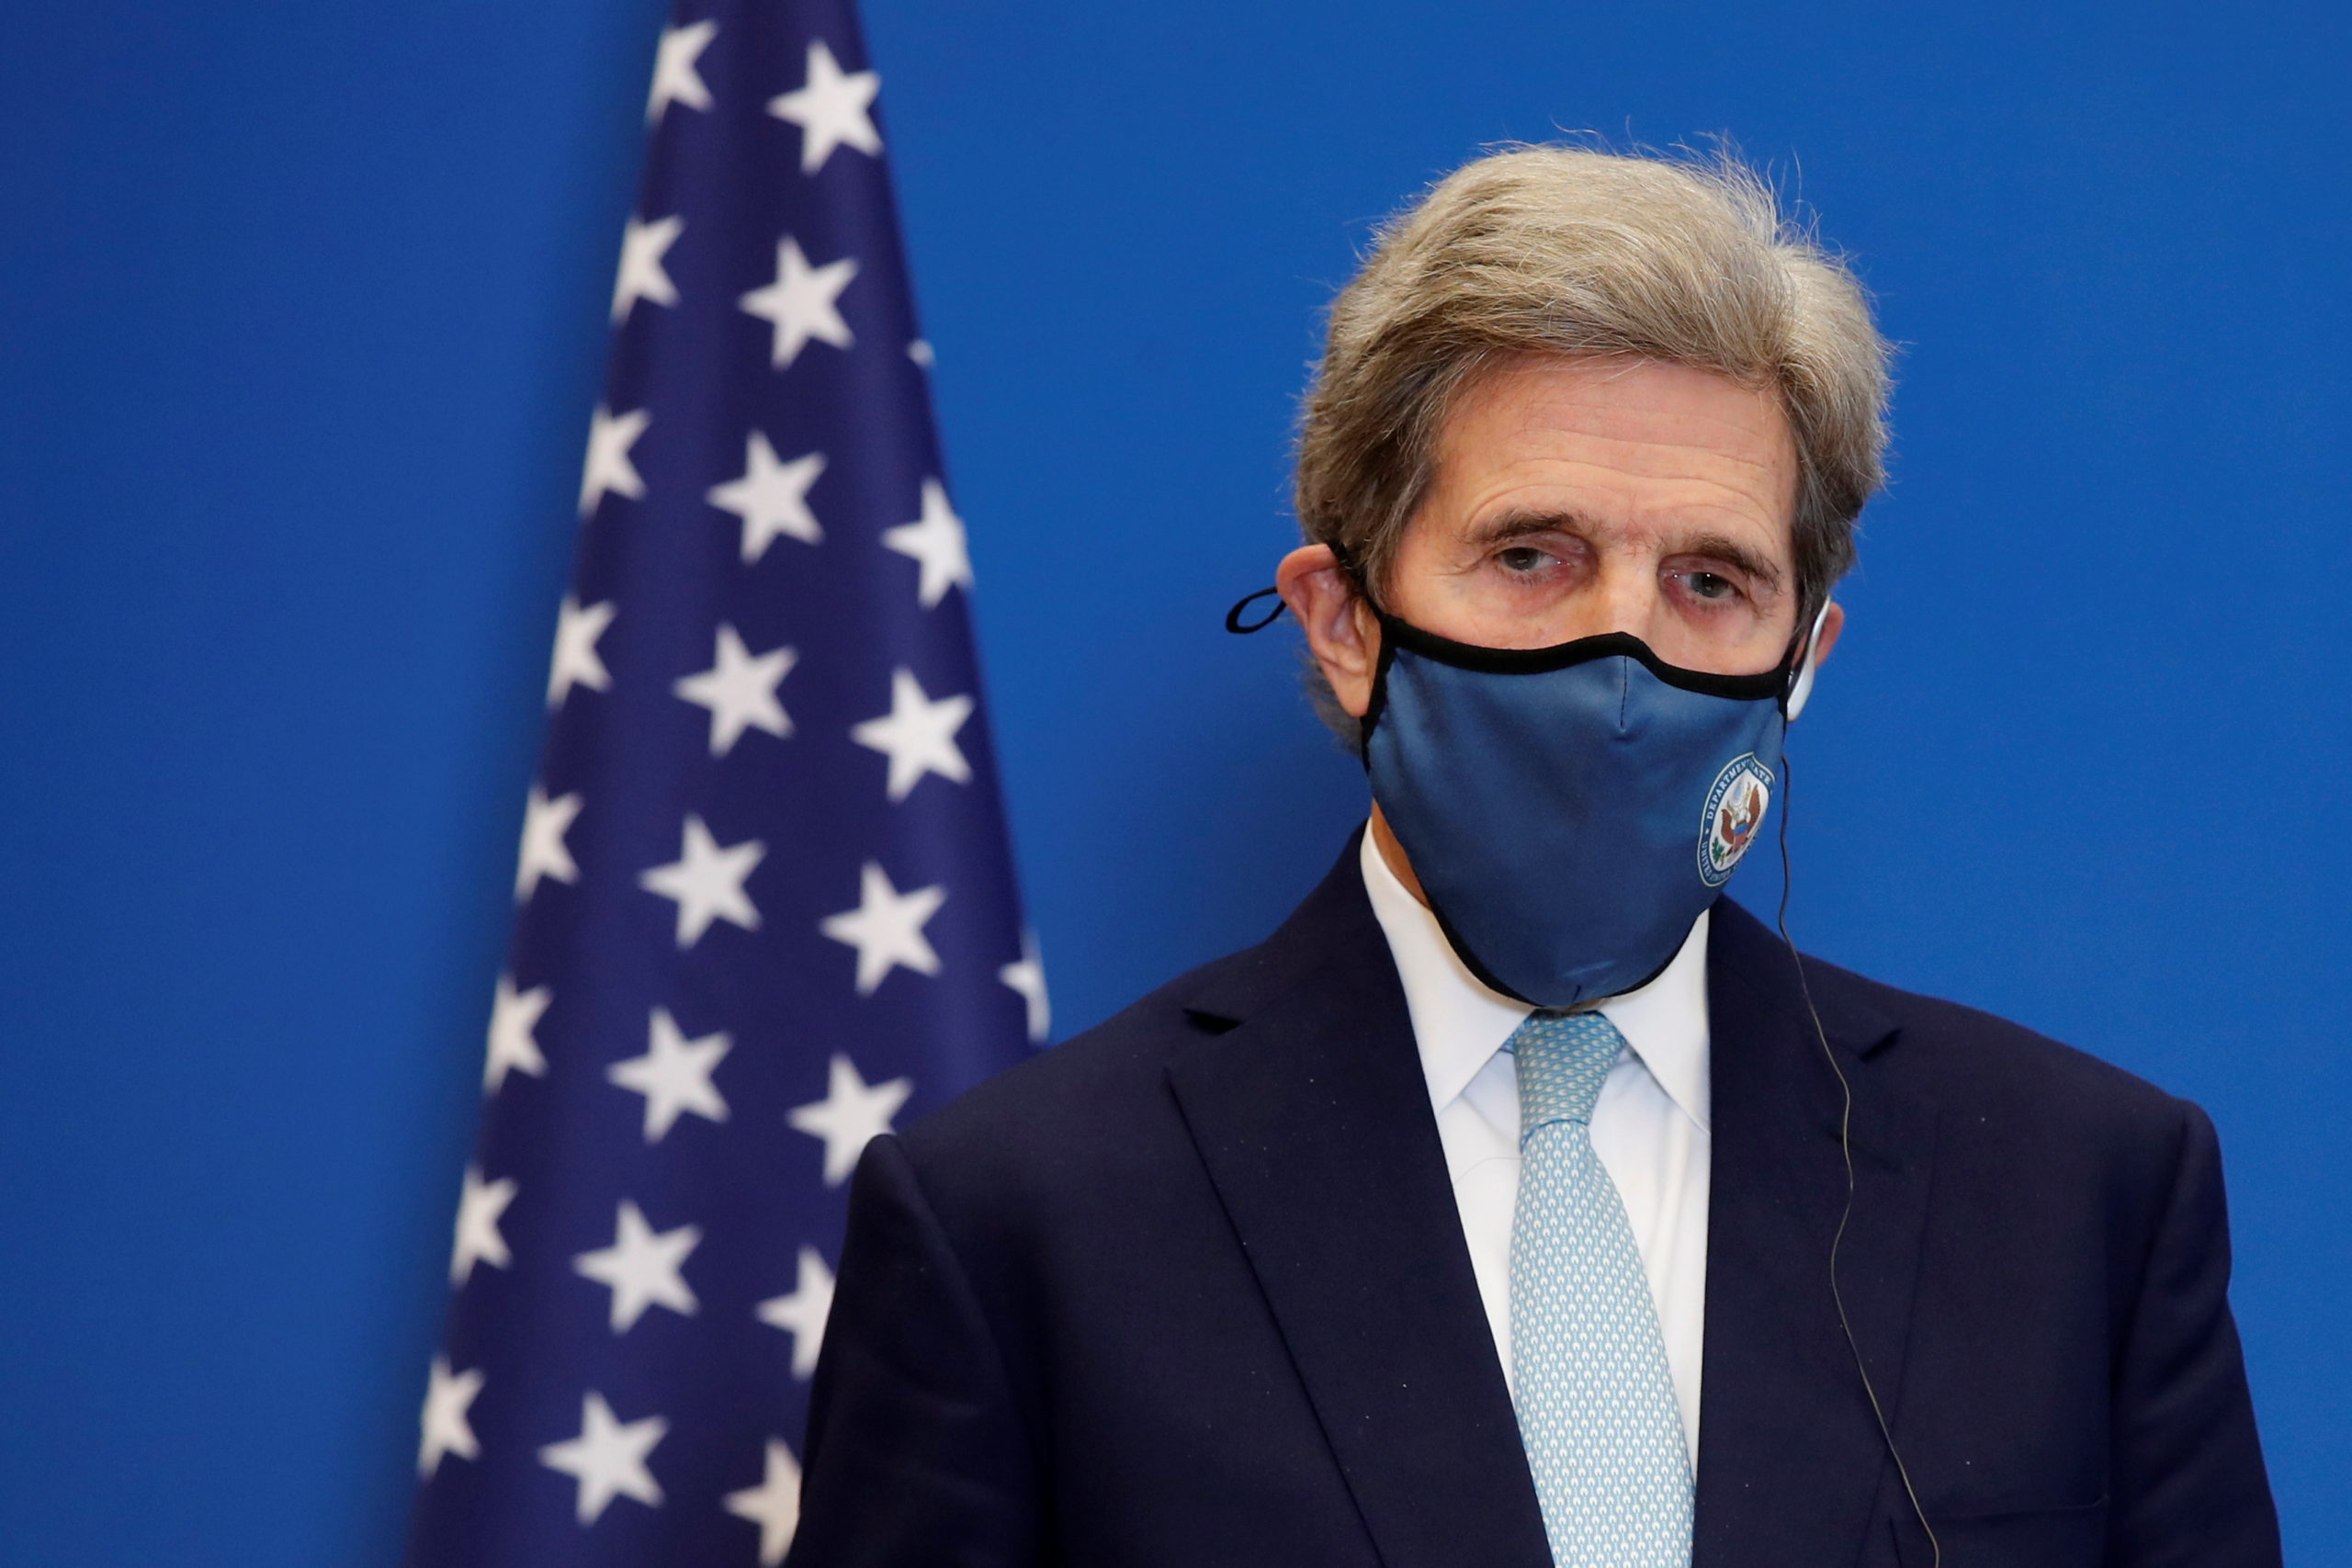 John Kerry "préoccupé" par le projet européen de taxe carbone aux frontières, selon la presse